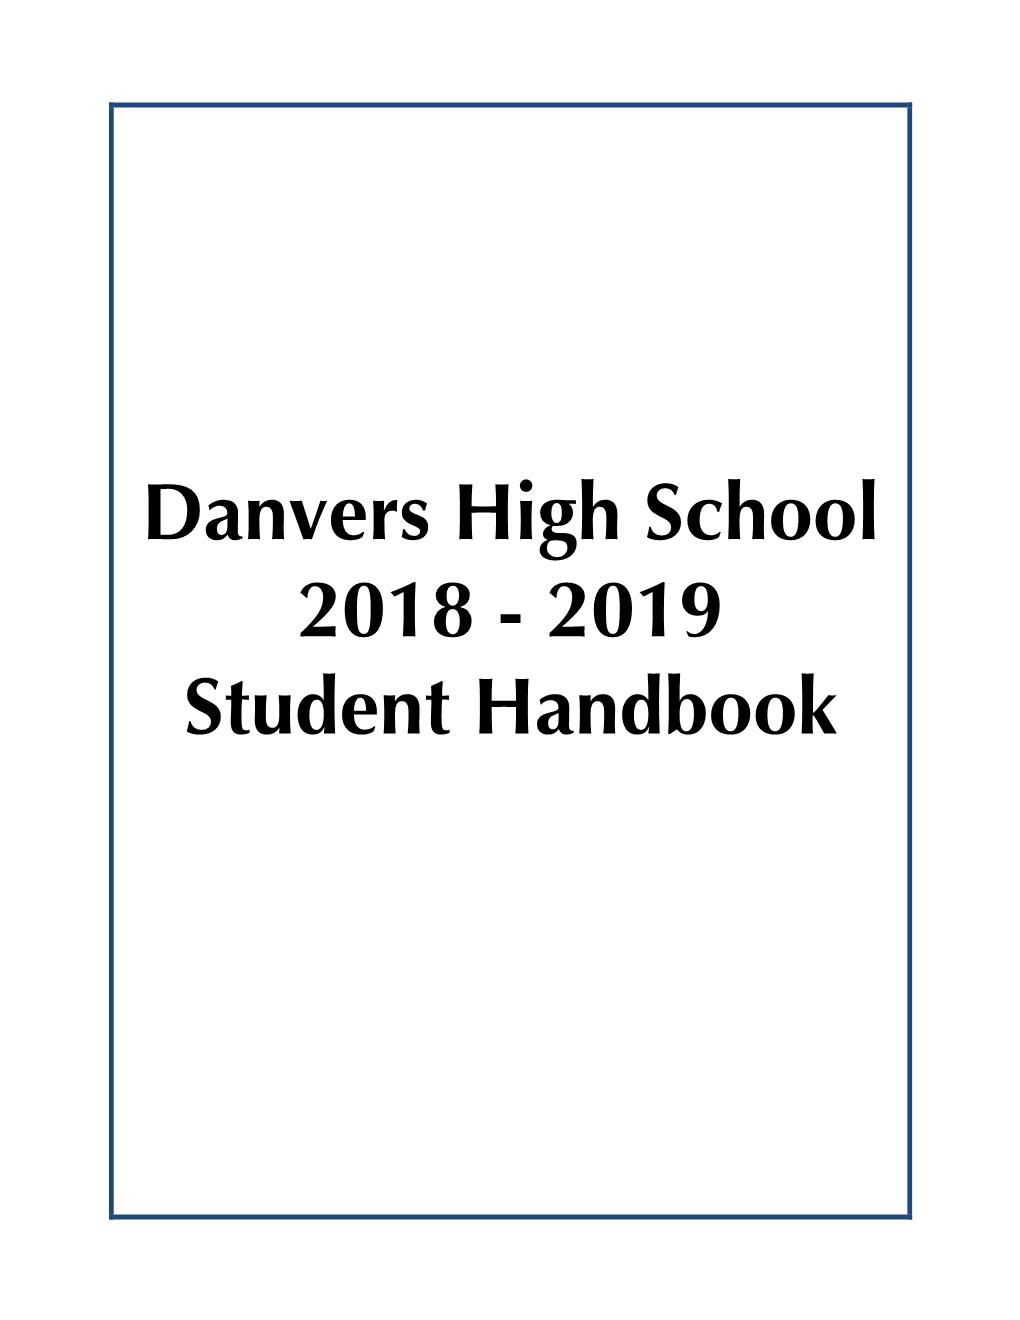 Danvers High School 2018 - 2019 Student Handbook